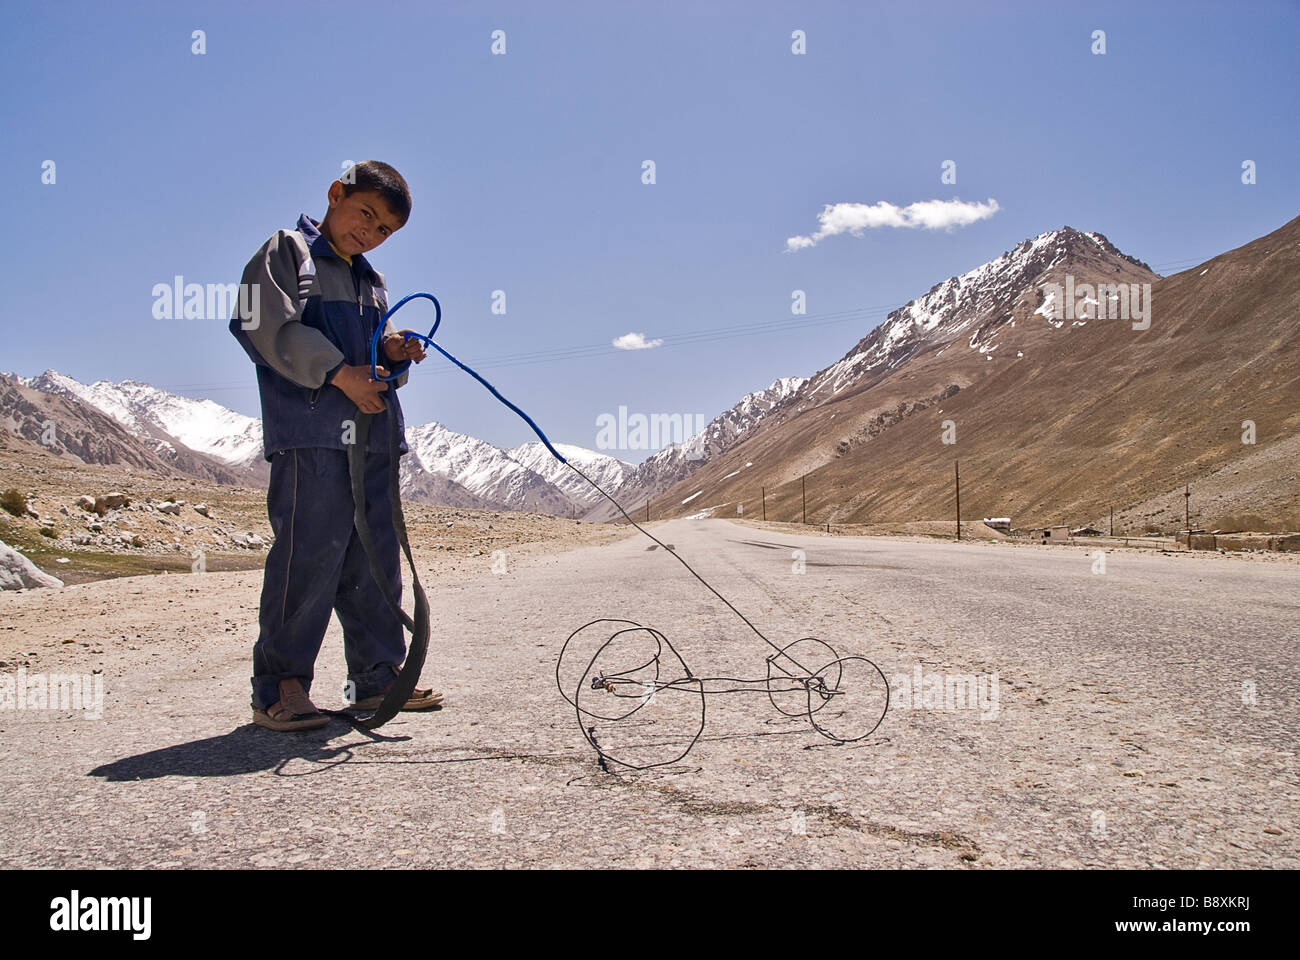 Tajik boy playing with an very basic toy, Pamir Highway, Tajikistan Stock Photo